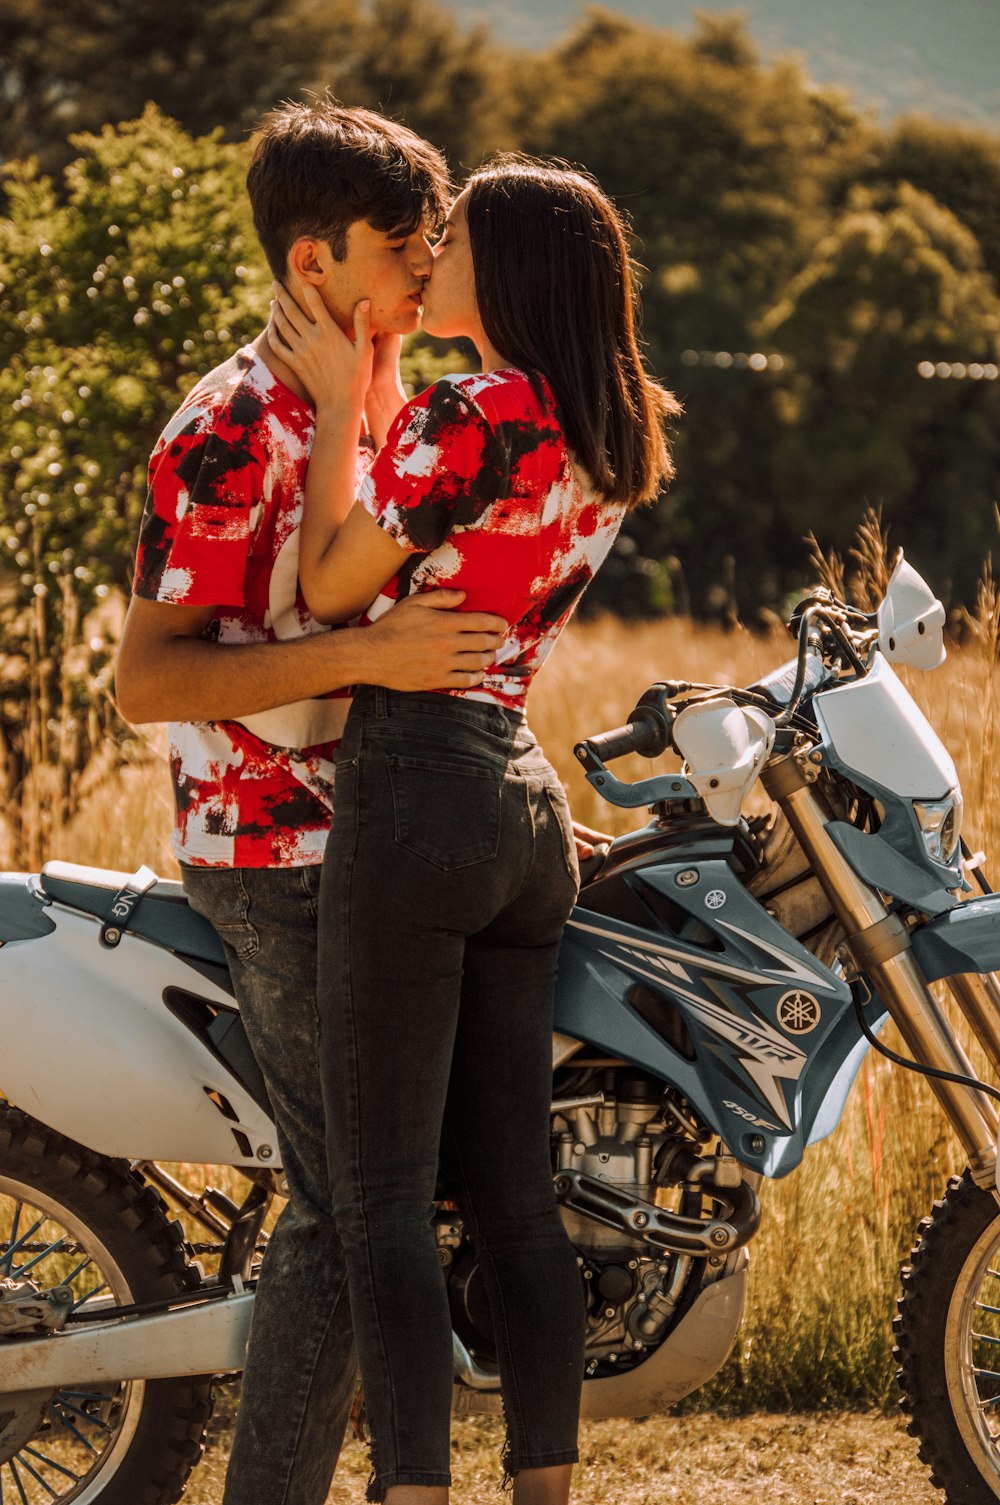 バイクの隣でキスをする男女